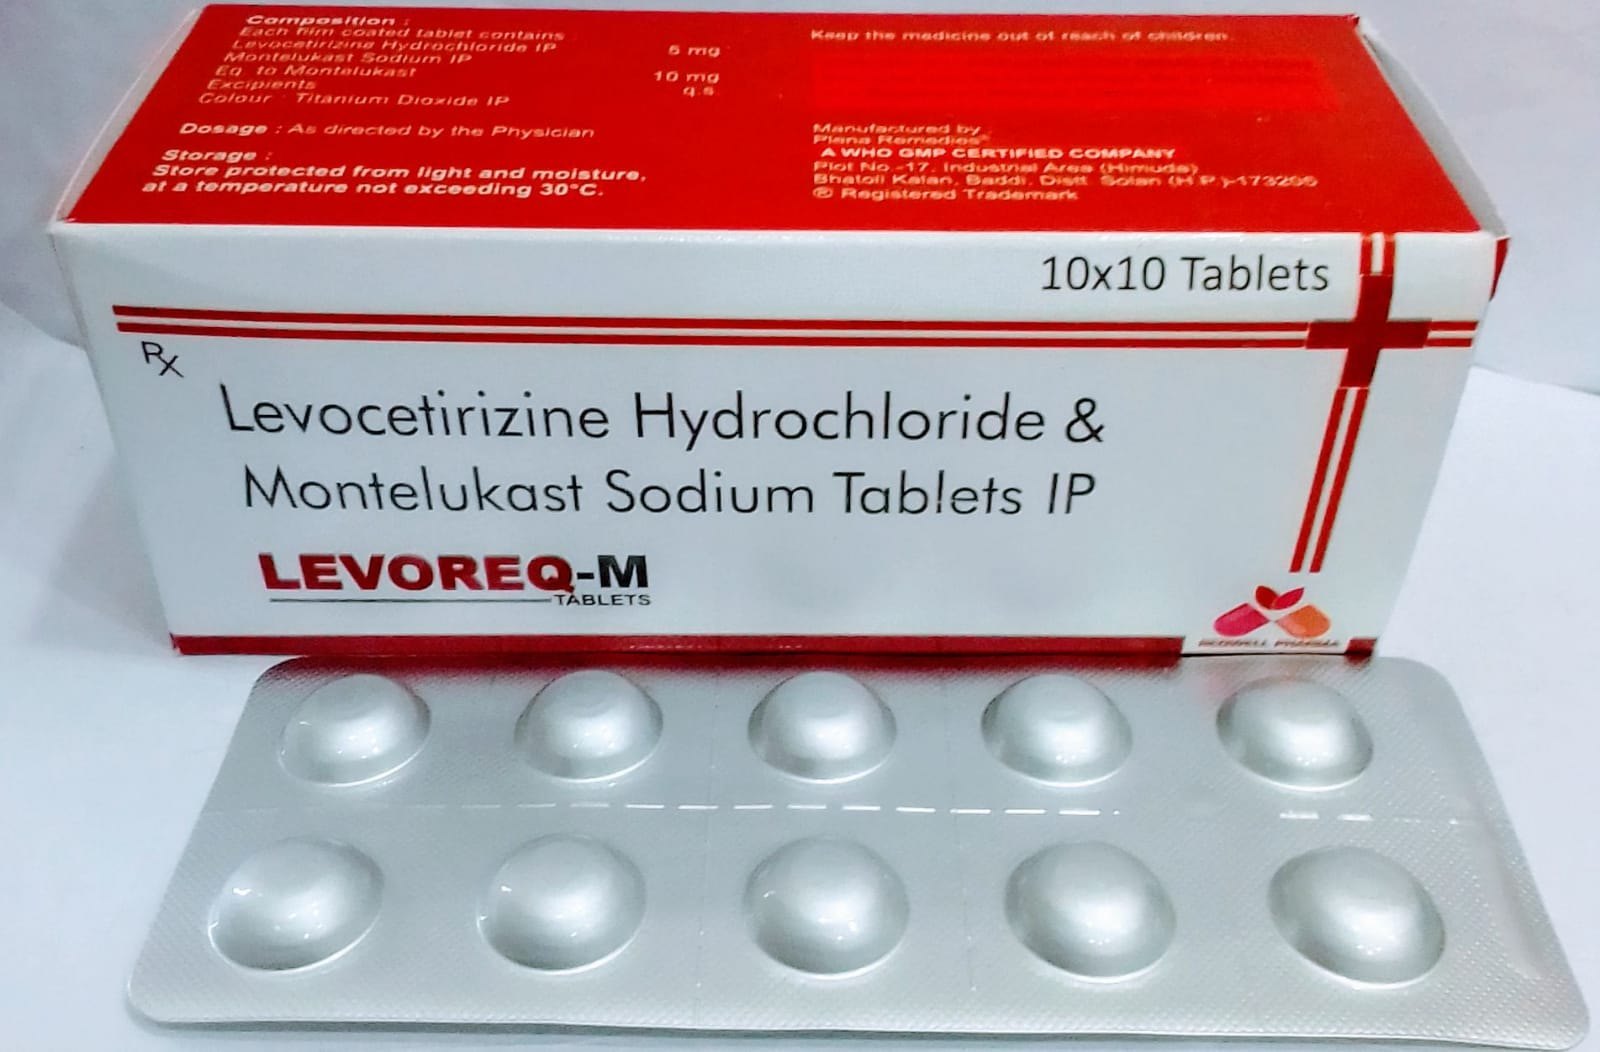 montelukast sodium and levocetirizine hydrochloride tablet uses